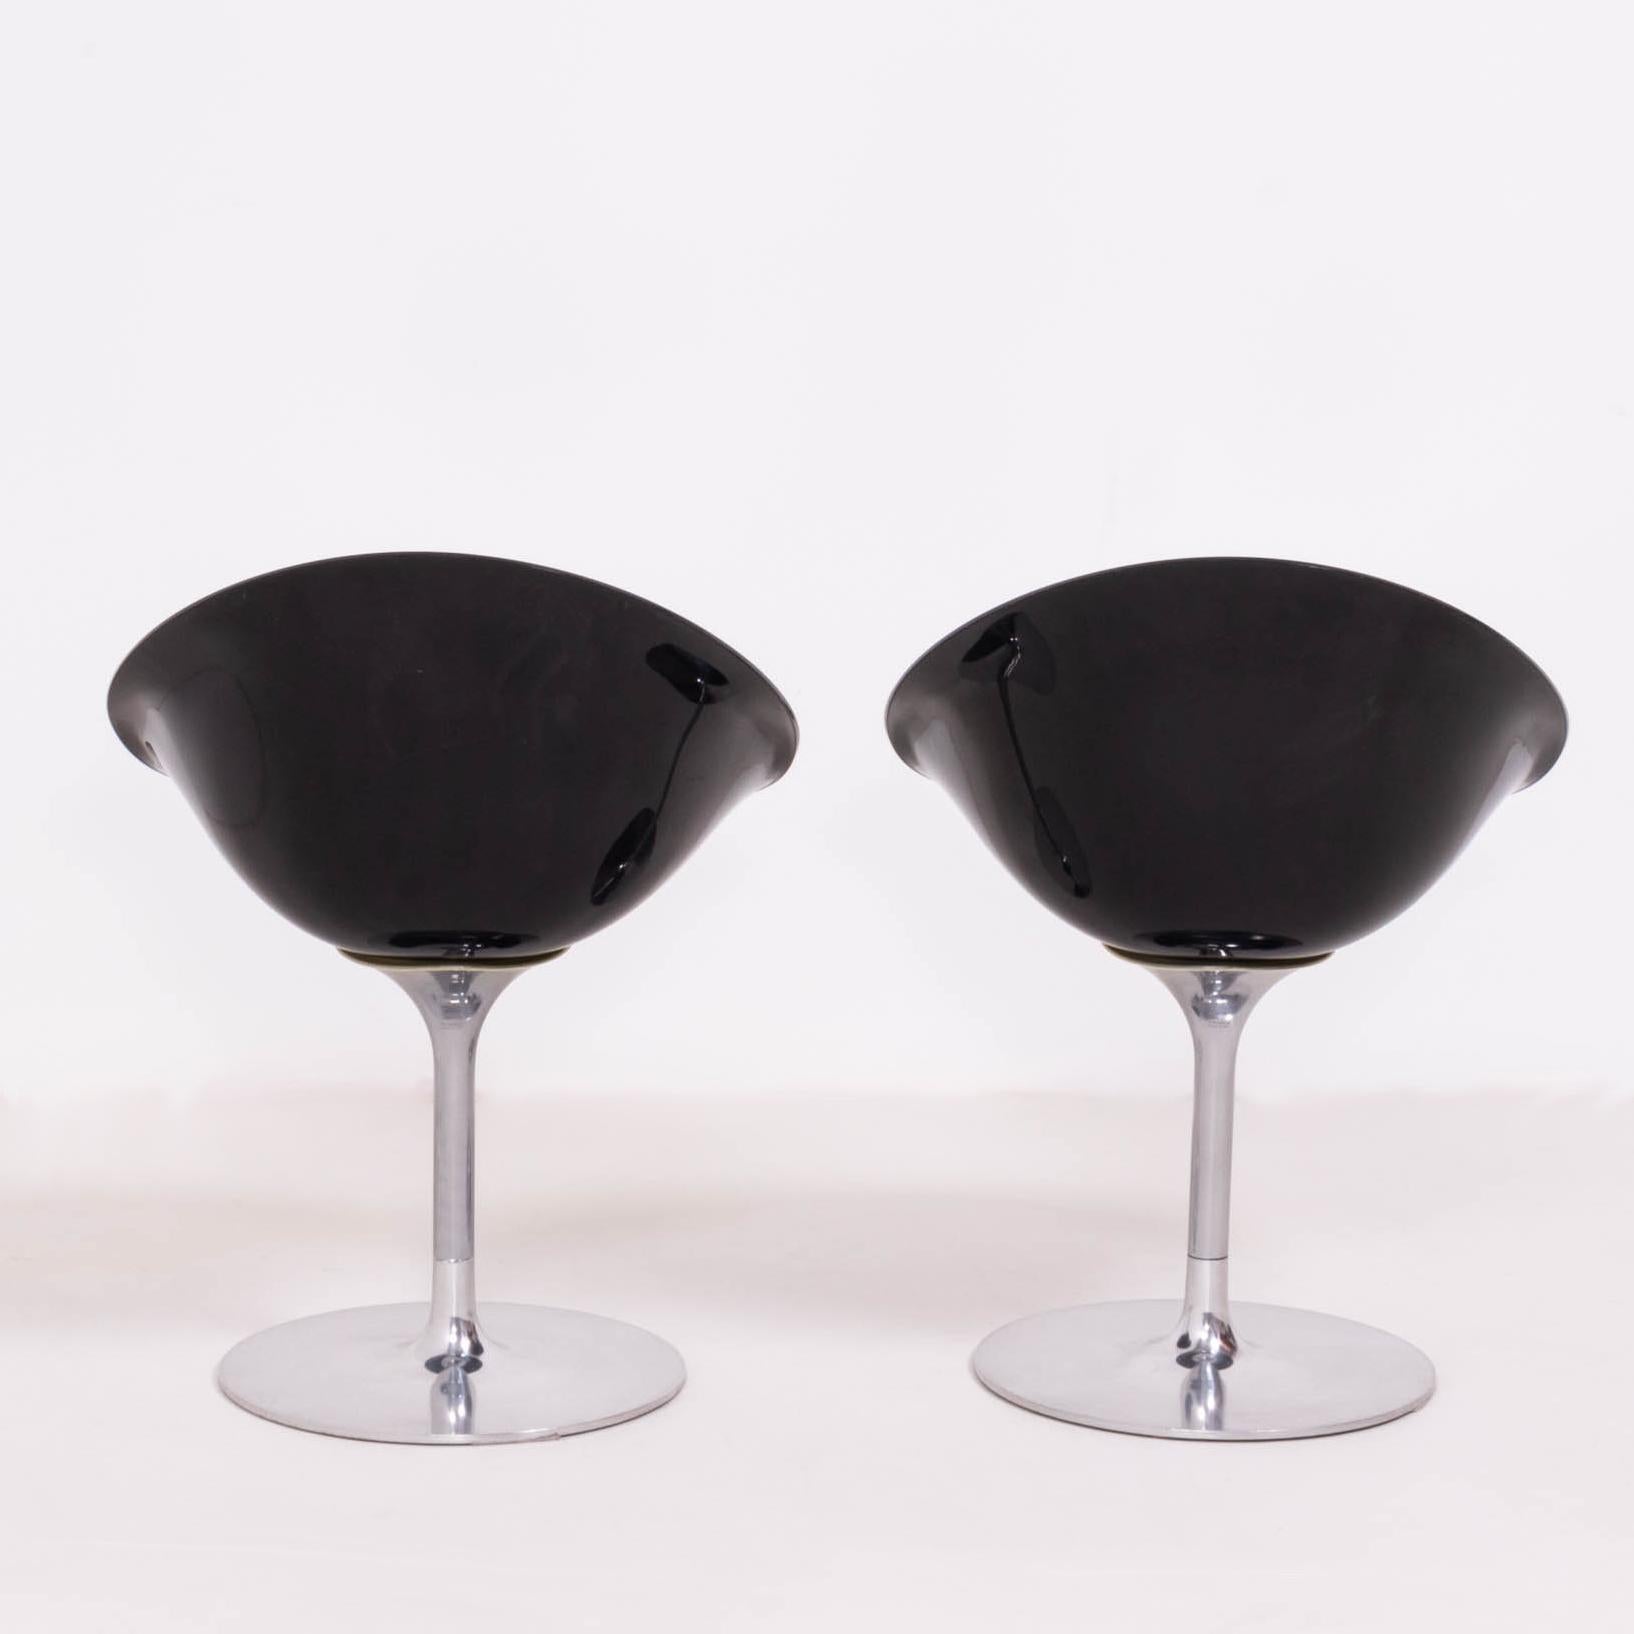 Fin du 20e siècle Chaises de salle à manger modernes Ero/S noires Kartell par Philippe Starck, lot de 2